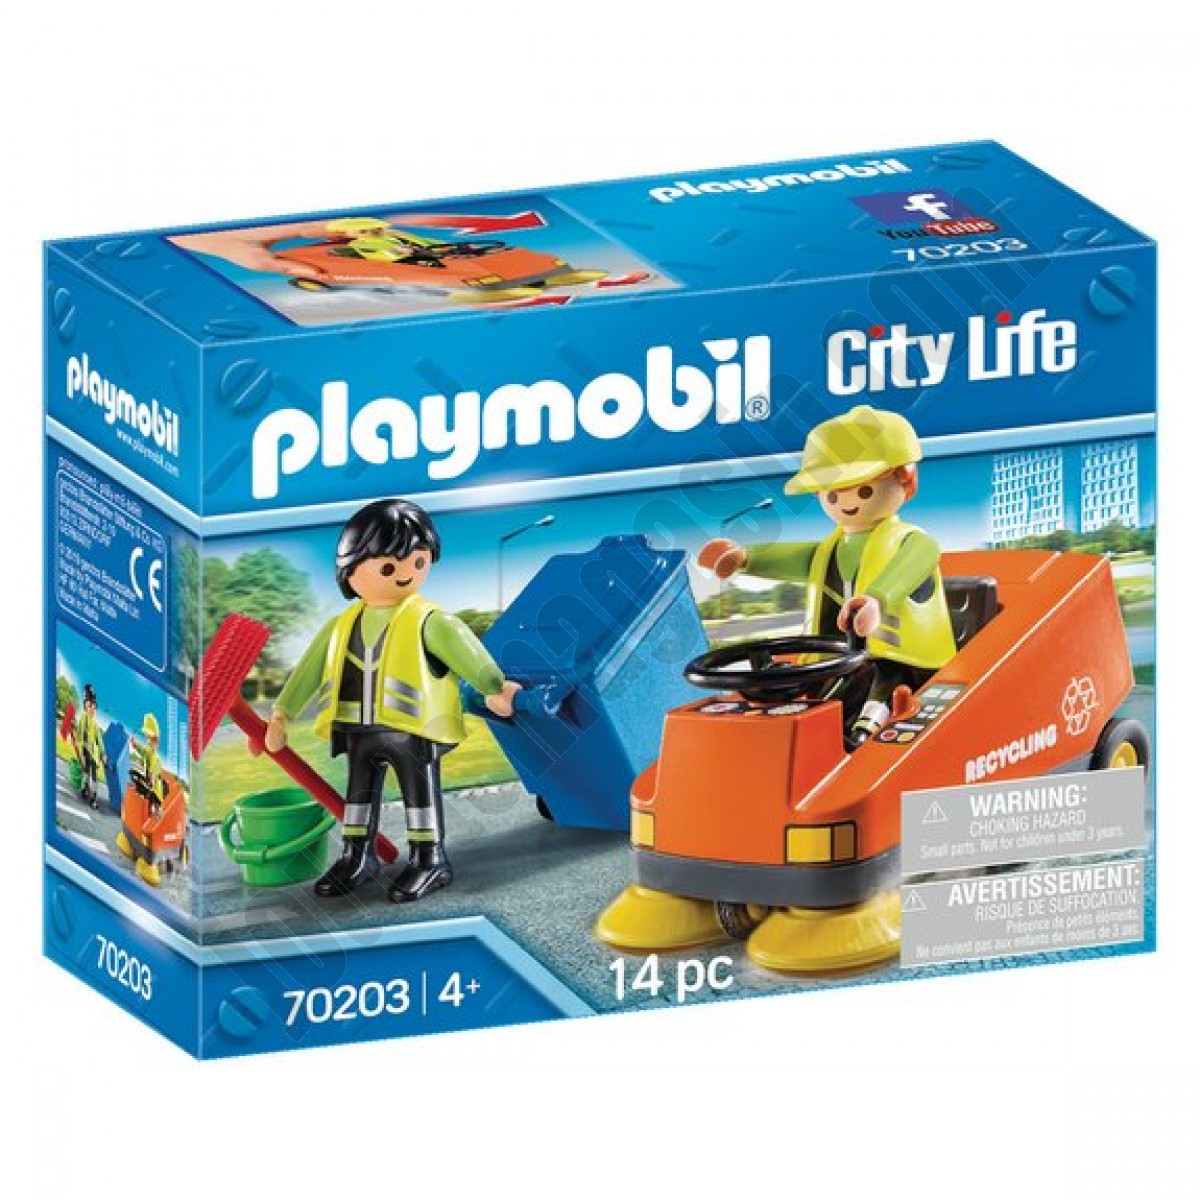 Agents d'entretien voierie Playmobil City Life 70203 En promotion - Agents d'entretien voierie Playmobil City Life 70203 En promotion